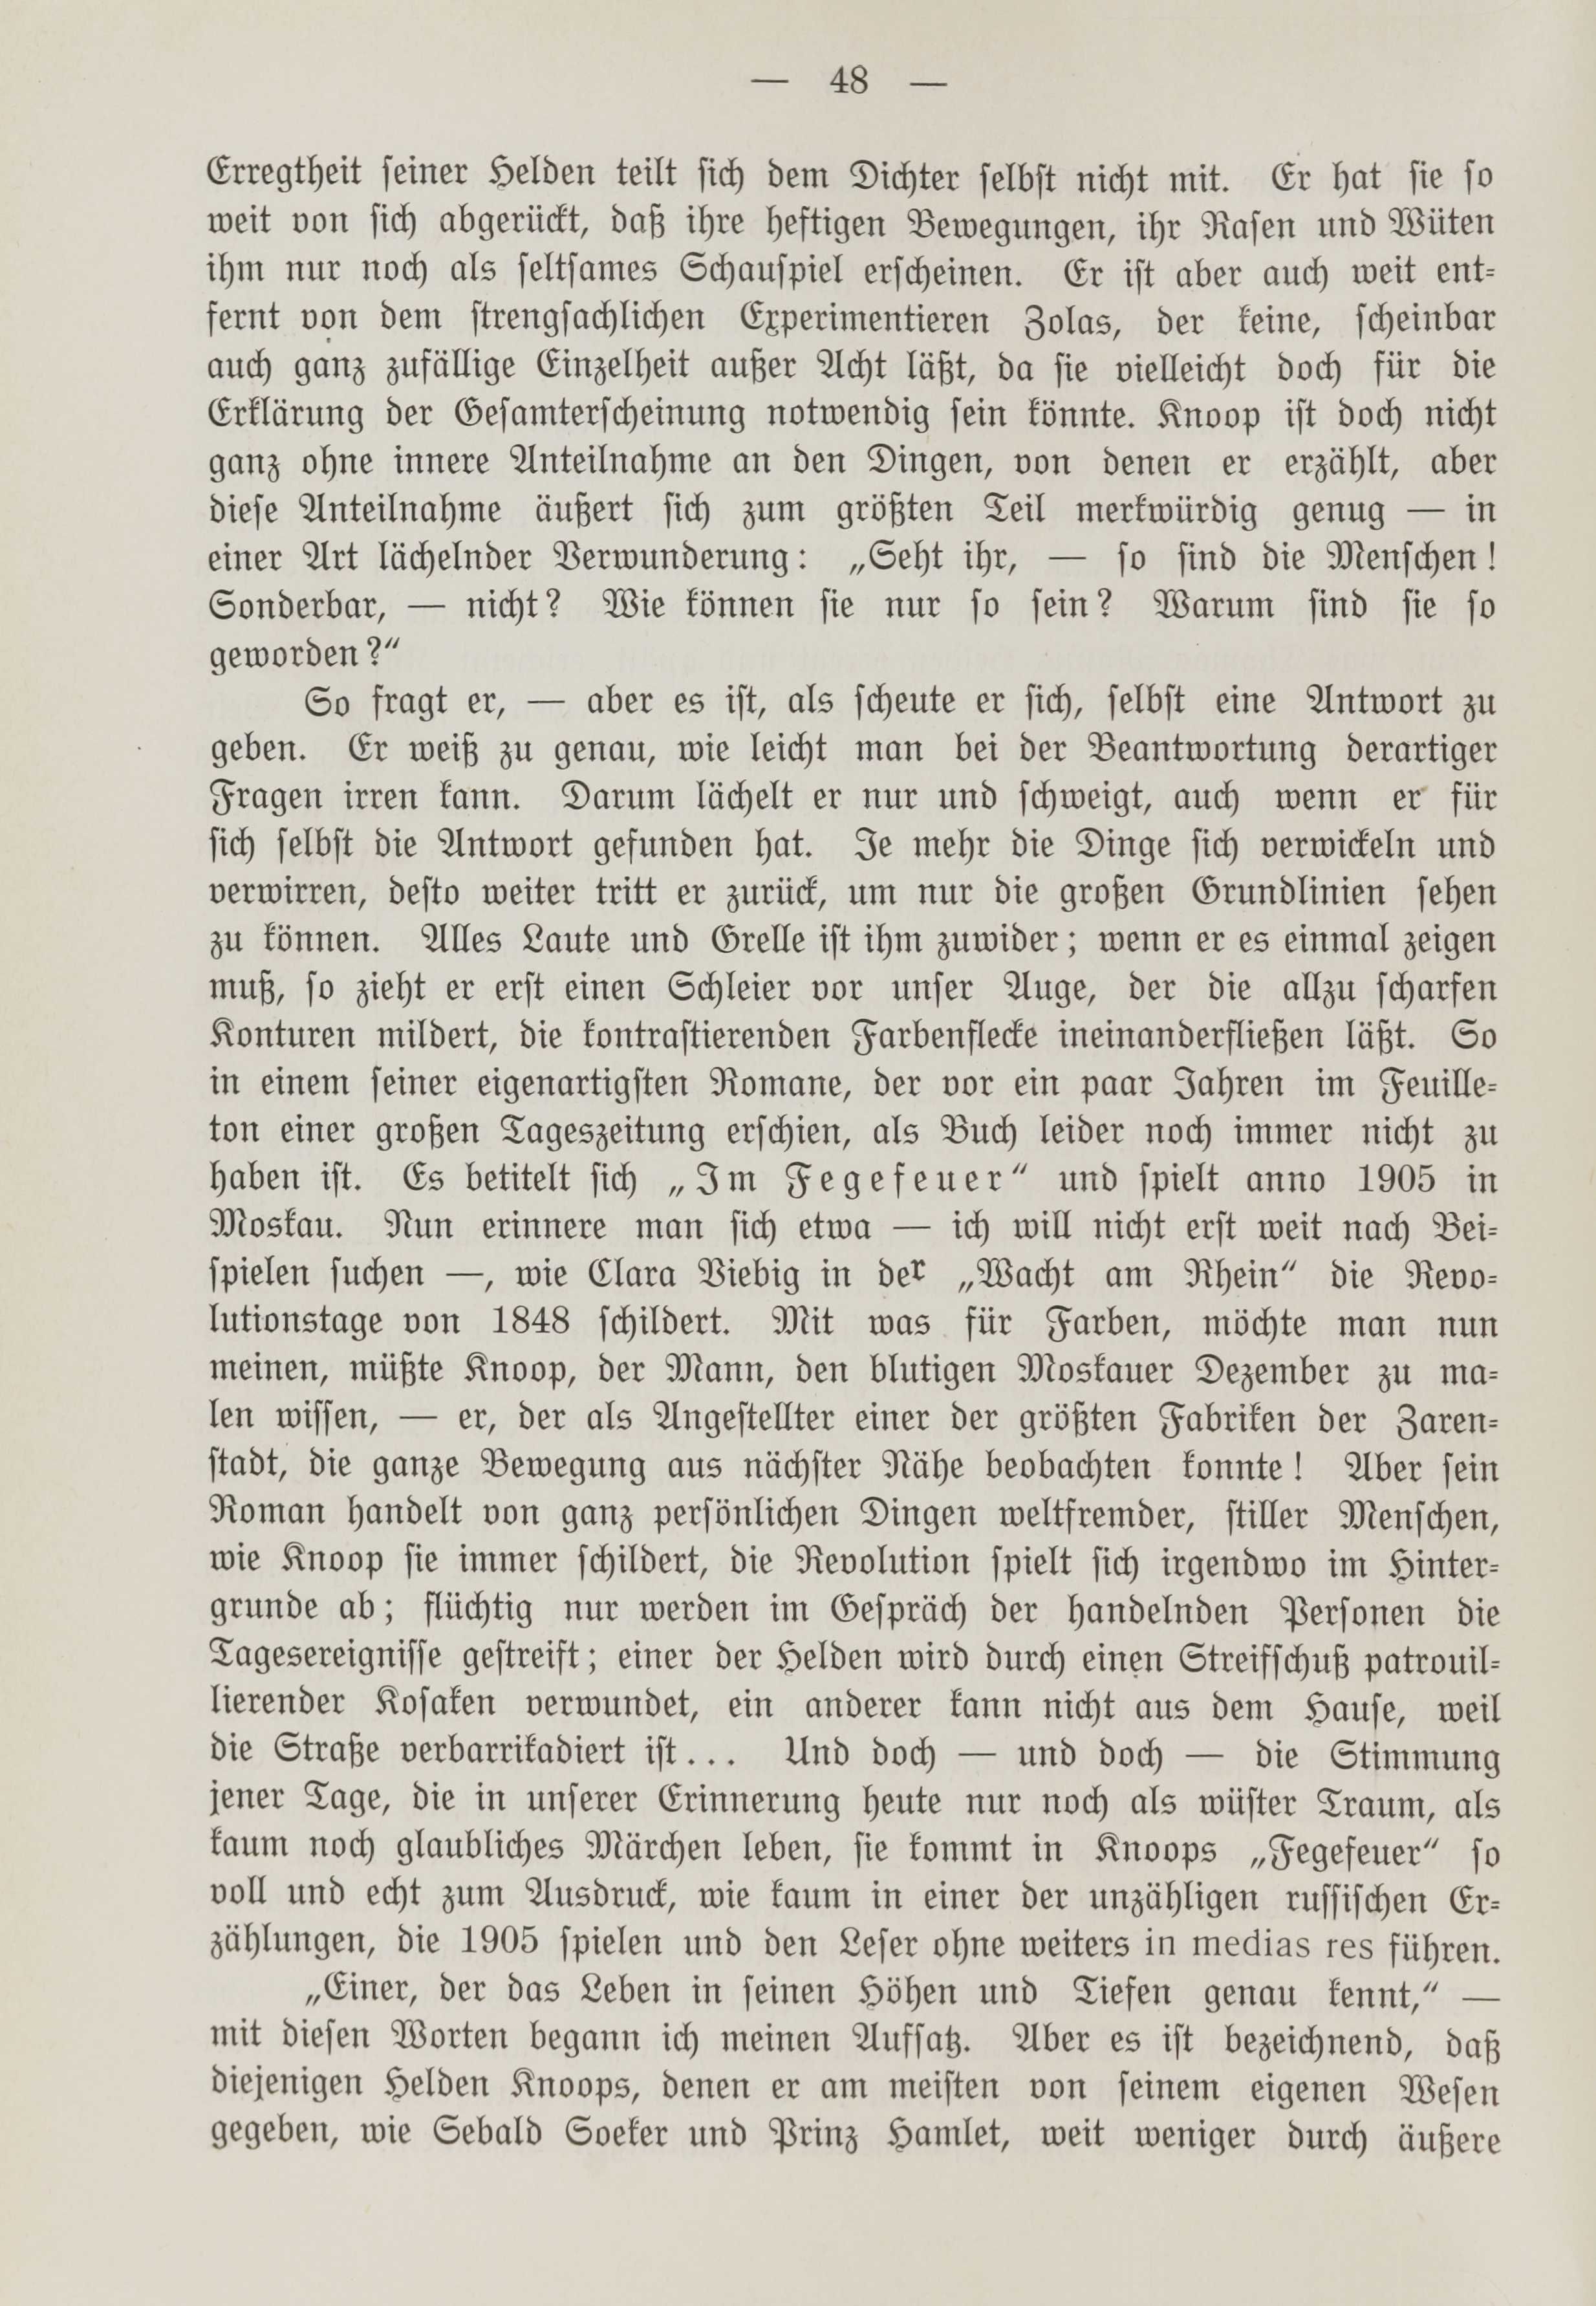 Deutsche Monatsschrift für Russland [1] (1912) | 55. (48) Main body of text